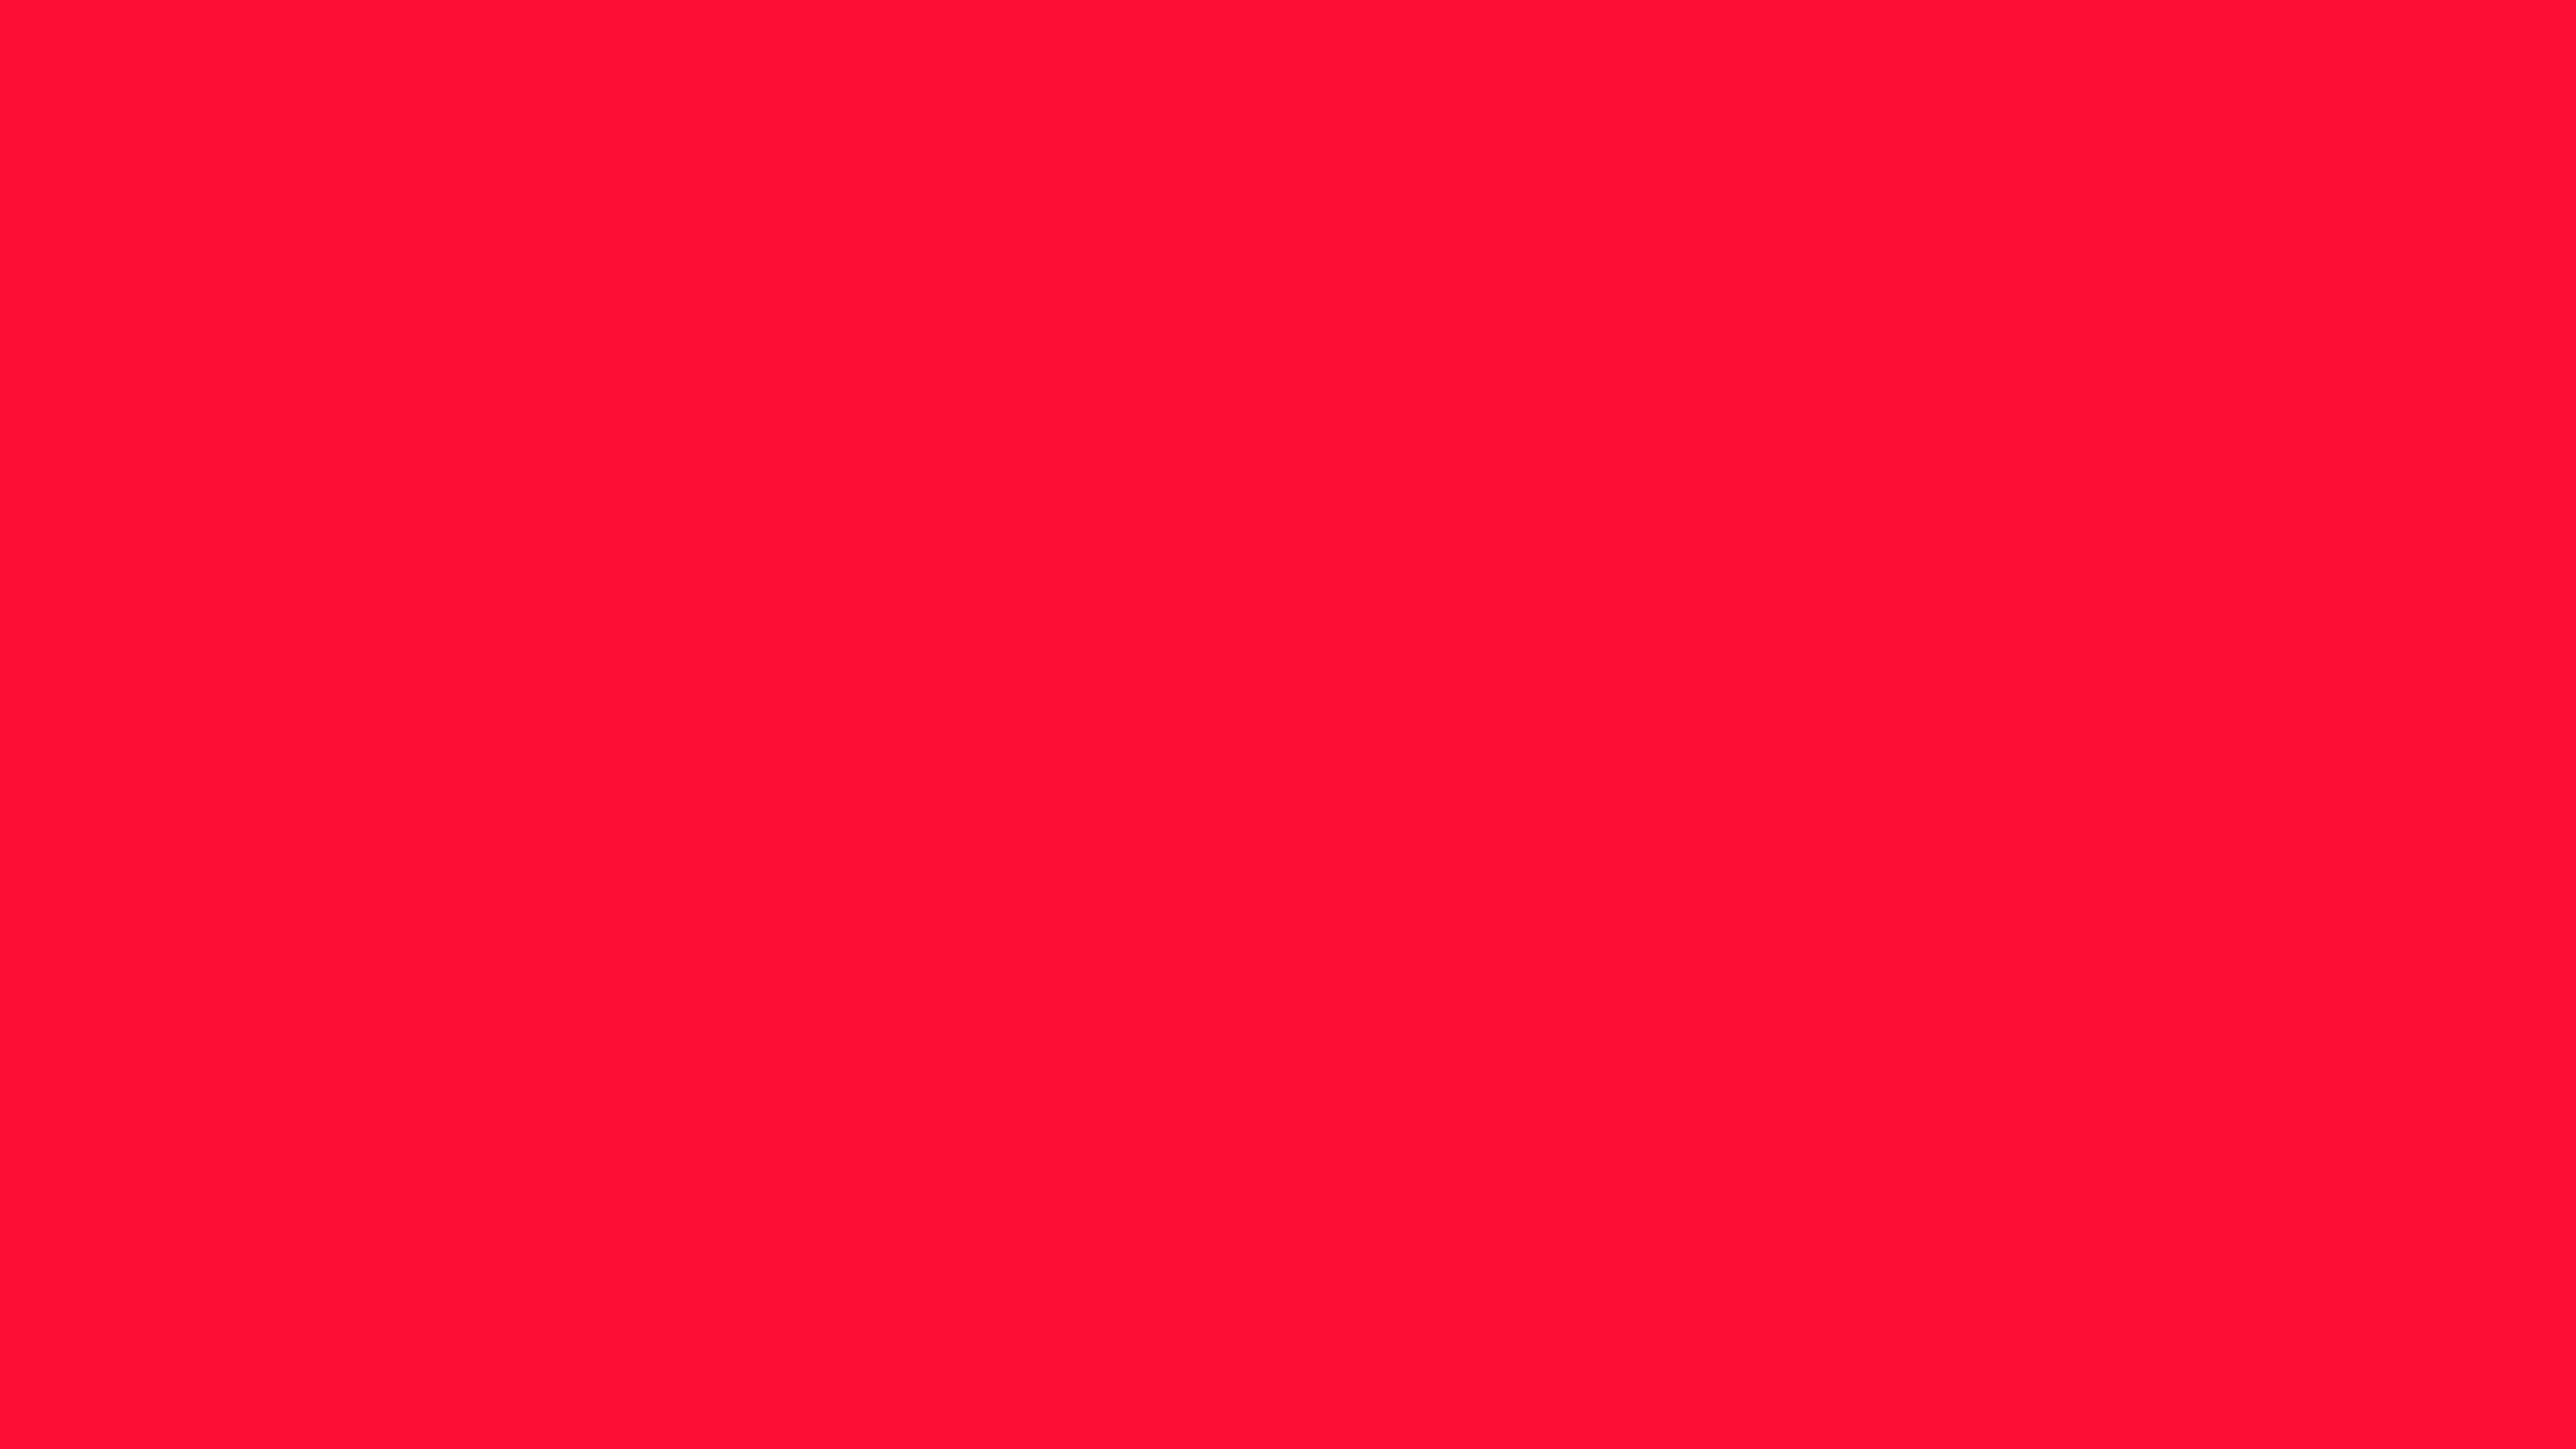 4096x2304 Scarlet Crayola Solid Color Background